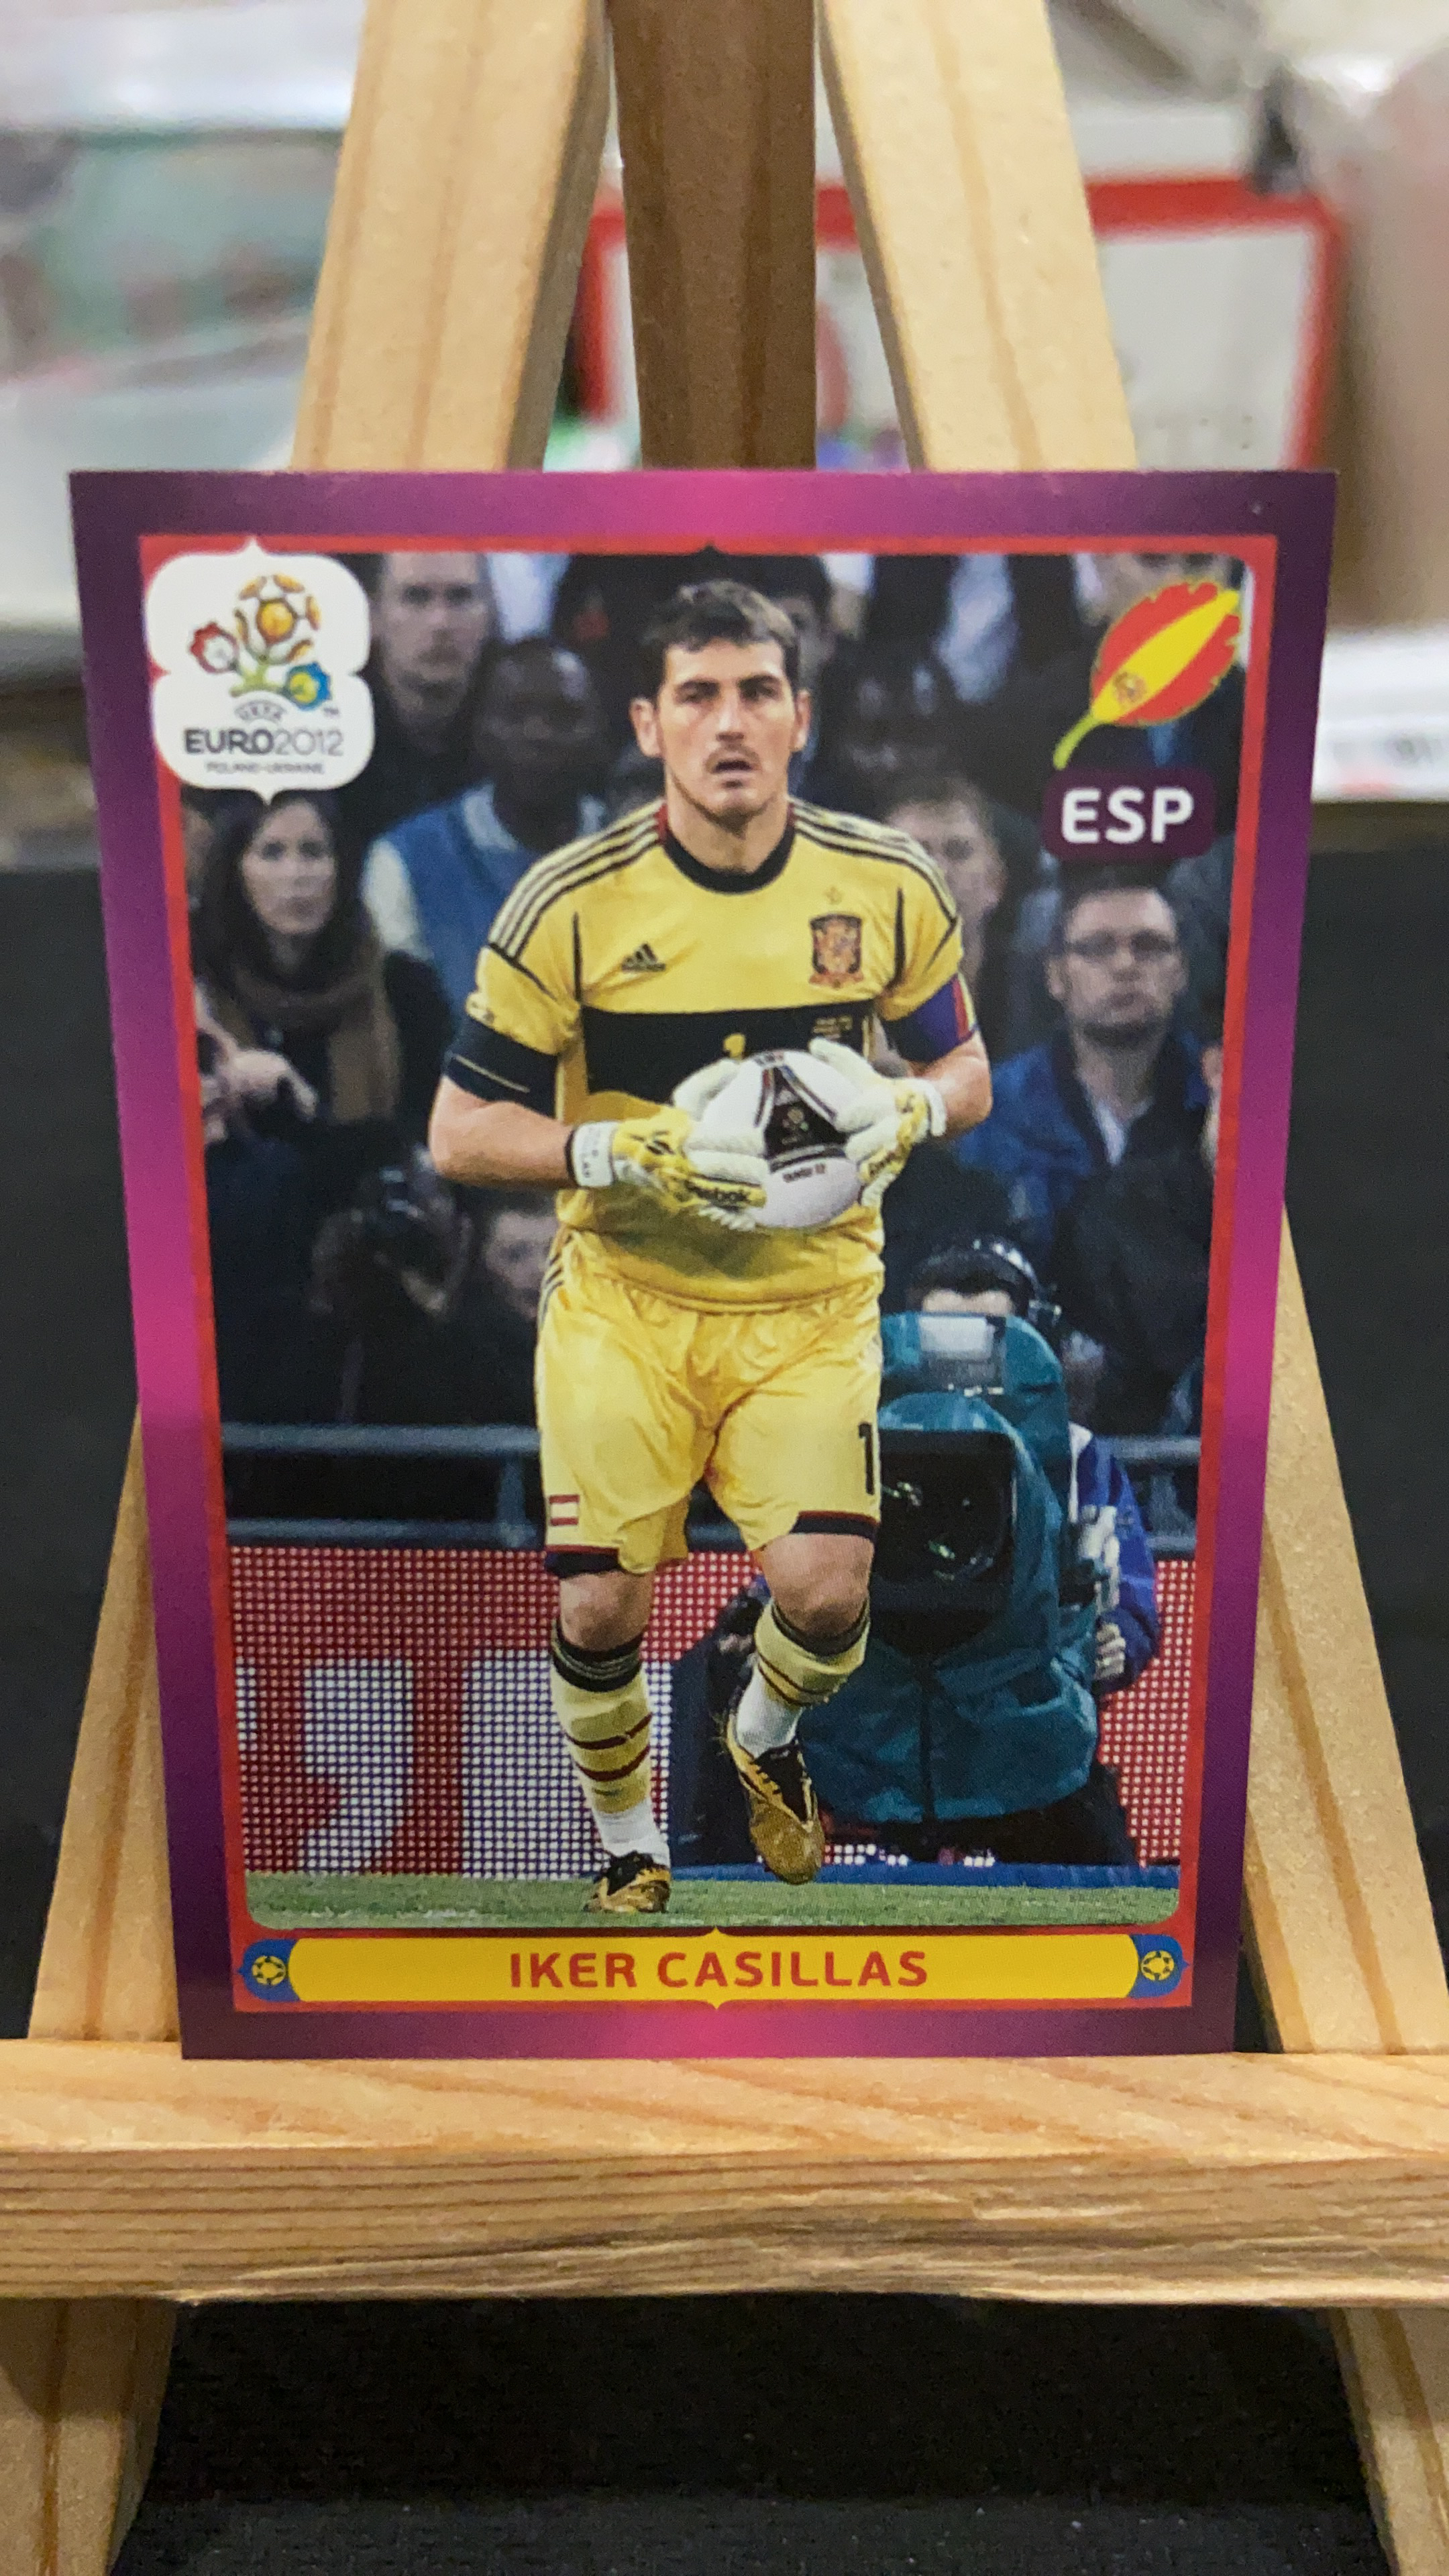 2012 Panini Euro 欧洲杯 贴纸 【不累计】 西班牙 皇家马德里 卡西利亚斯 大比例 凑套